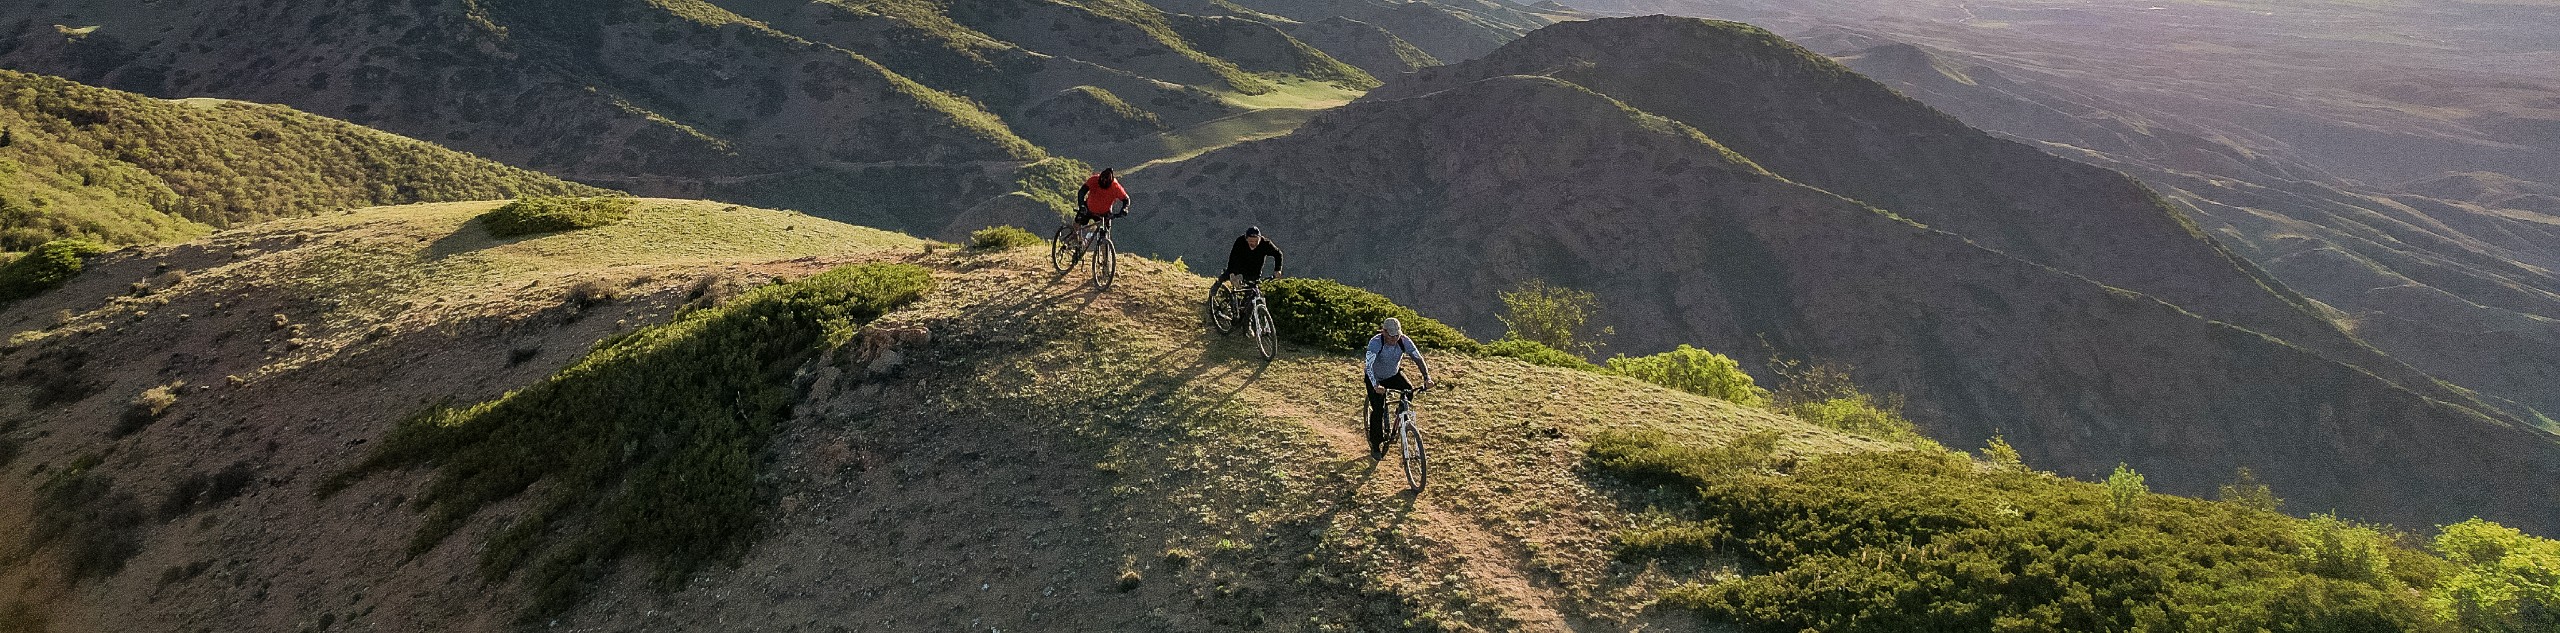 Kyrgyzstan Cycling Tour to Issyk-Kul Lake